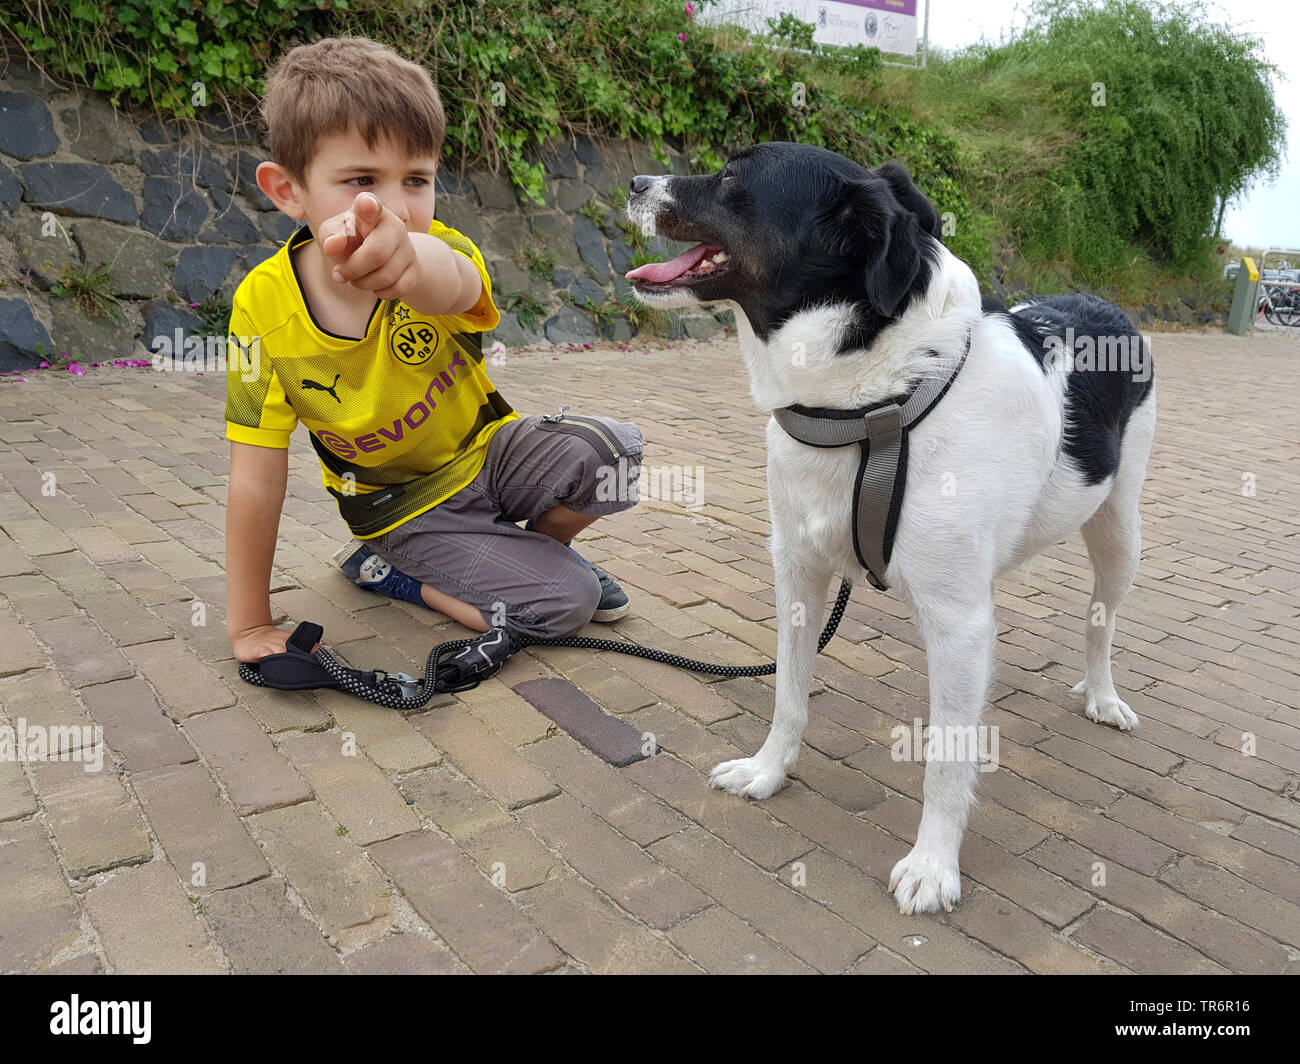 Dog (Canis lupus f. familiaris), petit garçon de genou sur le sol et montrant un chien de race mixte quelque chose avec le trigger finger, Allemagne Banque D'Images